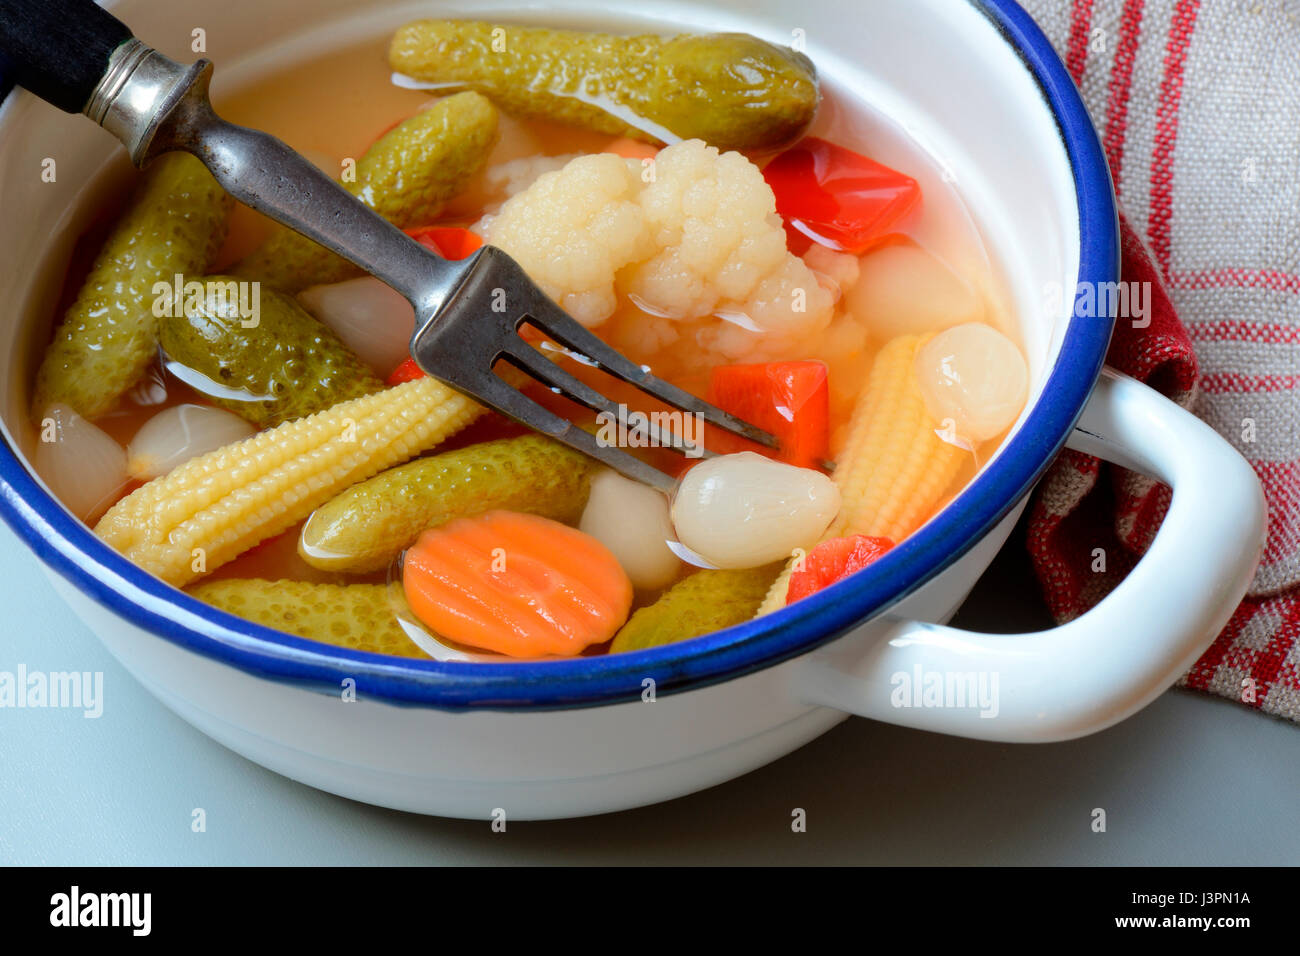 Mixed pickles mit Moehren, Blumenkohl, Gurken, Zwiebeln und Maiskoelbchen in einer Schale mit Gabel, eingelegte, eingelegt, Essiggurke, Essiggurken Stock Photo